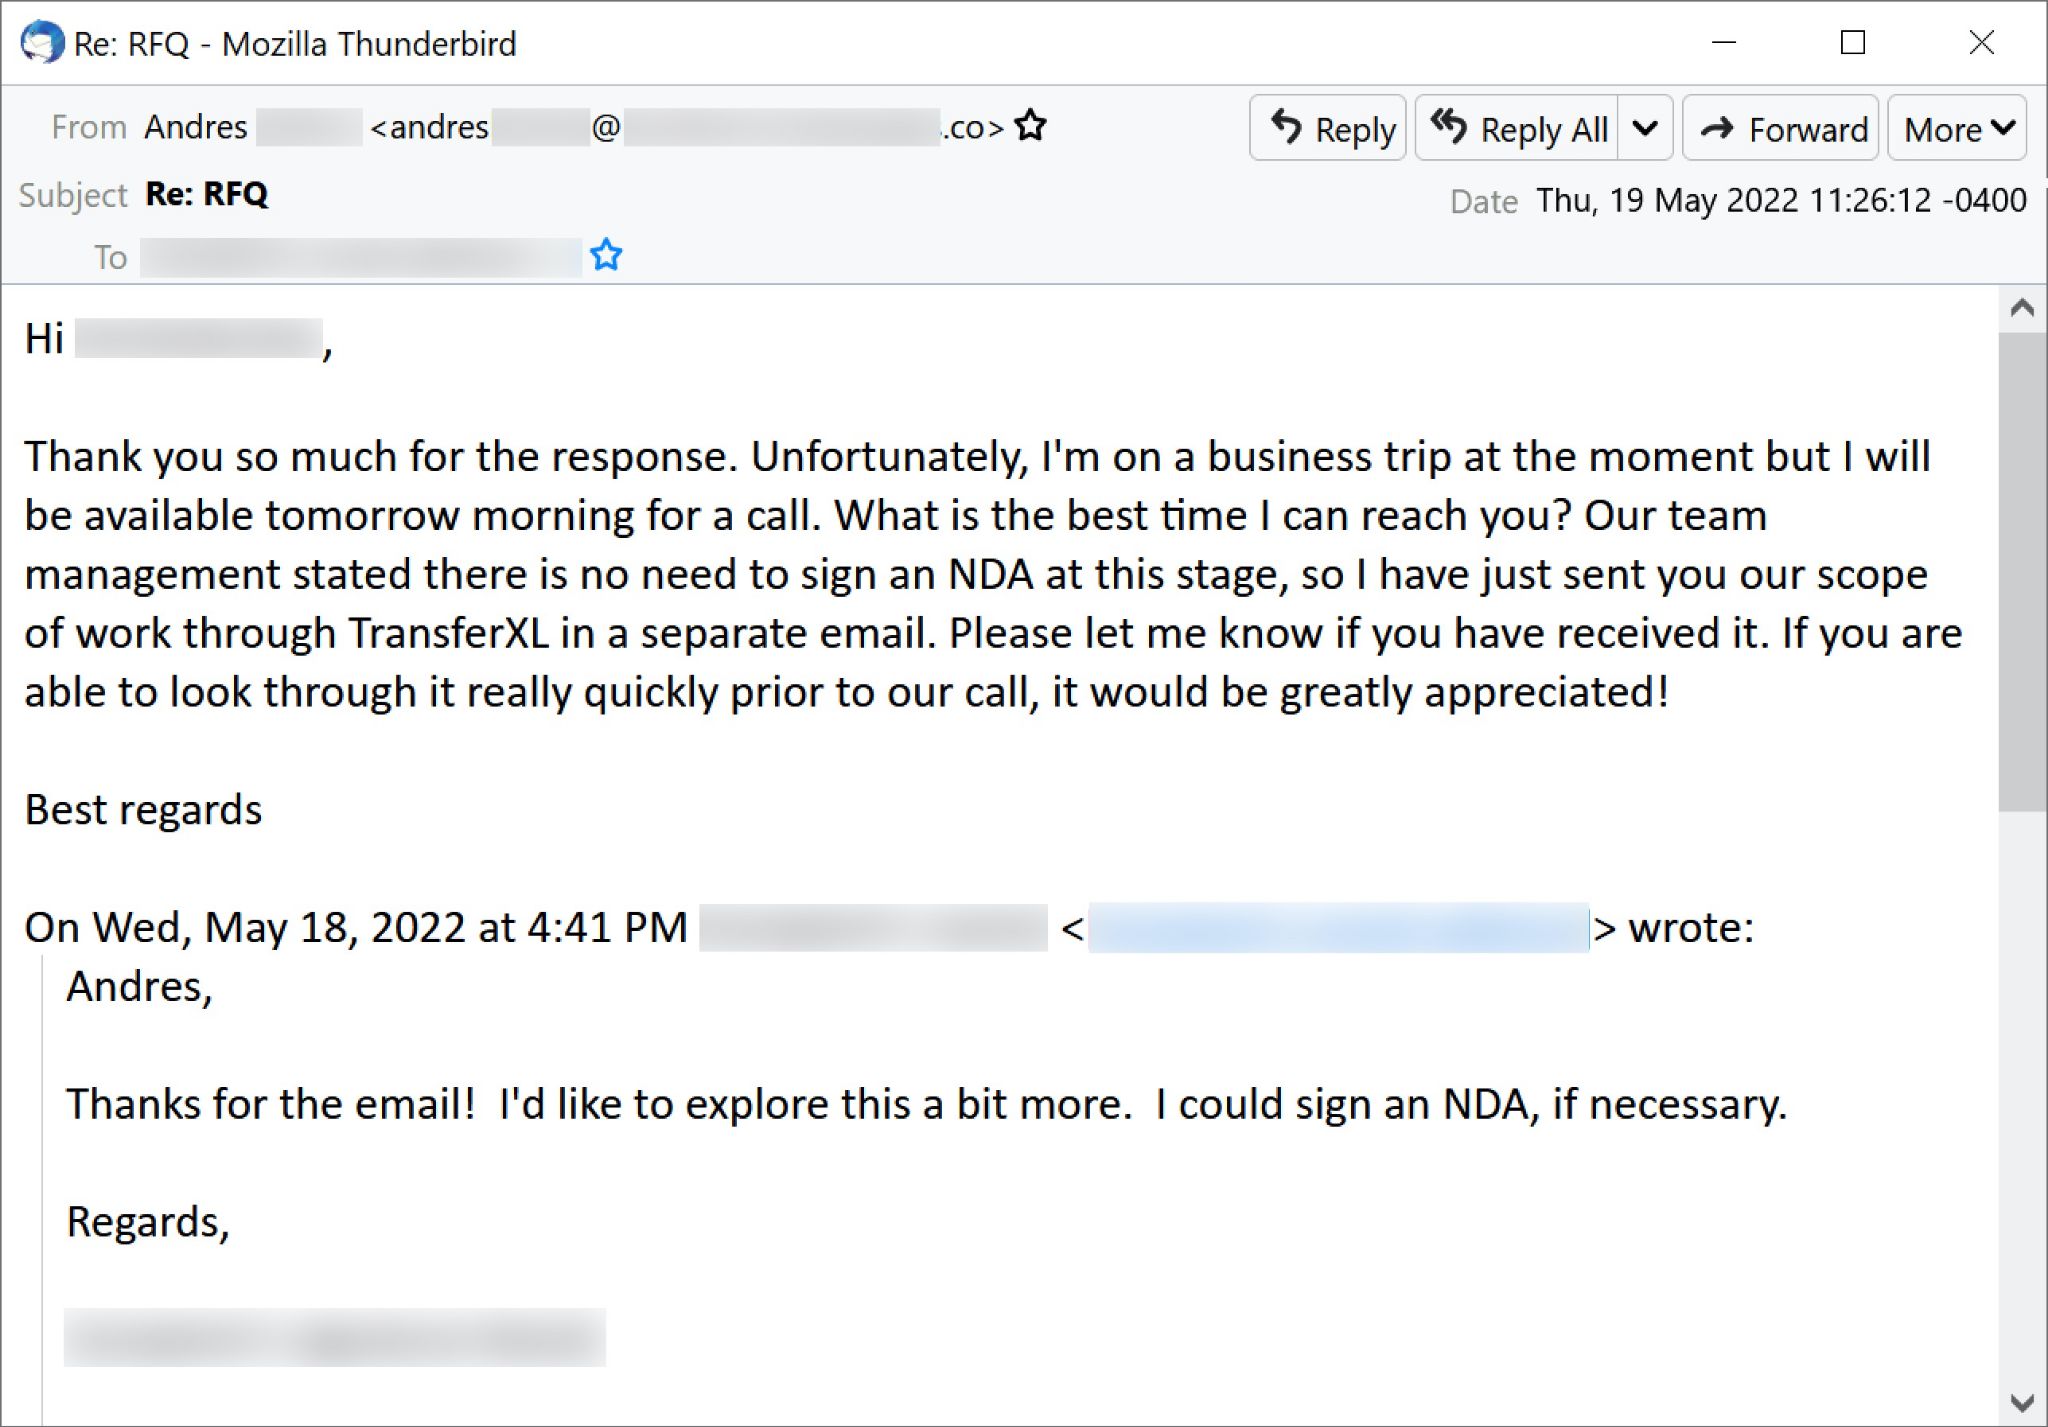 被害者メールから図2に示したメールへの返信を受け取ると、Projector Libraはこの図に示したメールで返信しました。このメールでは、受信者にNDAへの署名は必要ないと伝える一方で、作業範囲記述書をTransferXLから別のメールで送信したと書かれています。そして受信者に、そのファイルの受領確認を返信したうえで、電話での打ち合わせの前にファイルに目を通すよう求めています。 